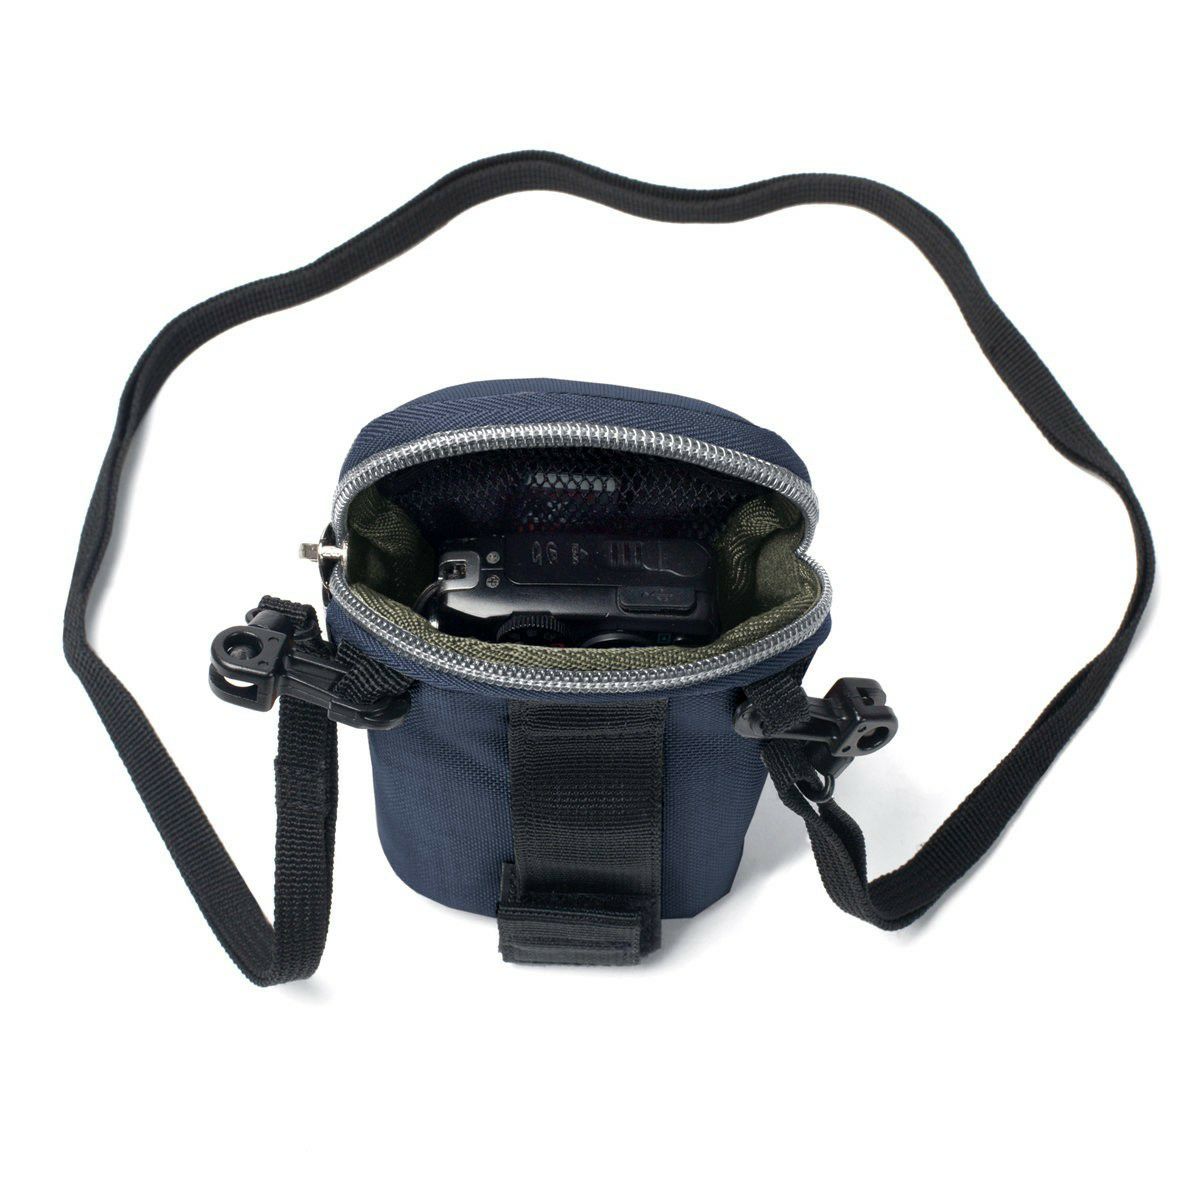 Crumpler Base Layer Camera Pouch S sunday blue copper (BLCP-S-002) plava bakrena torba za fotoaparat